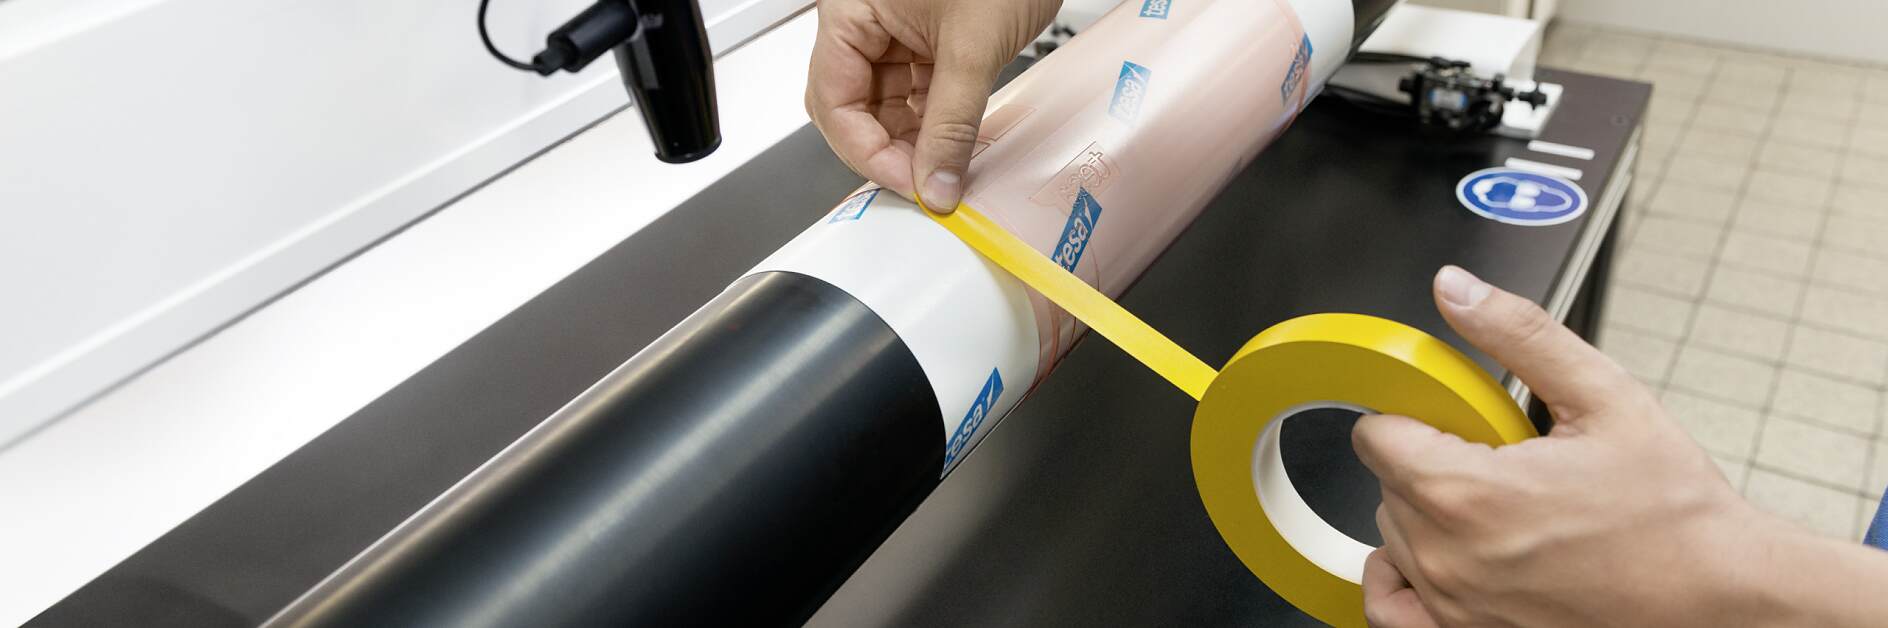 Benzi de proces pentru imprimarea flexografică tesa®: Etanşarea muchiilor